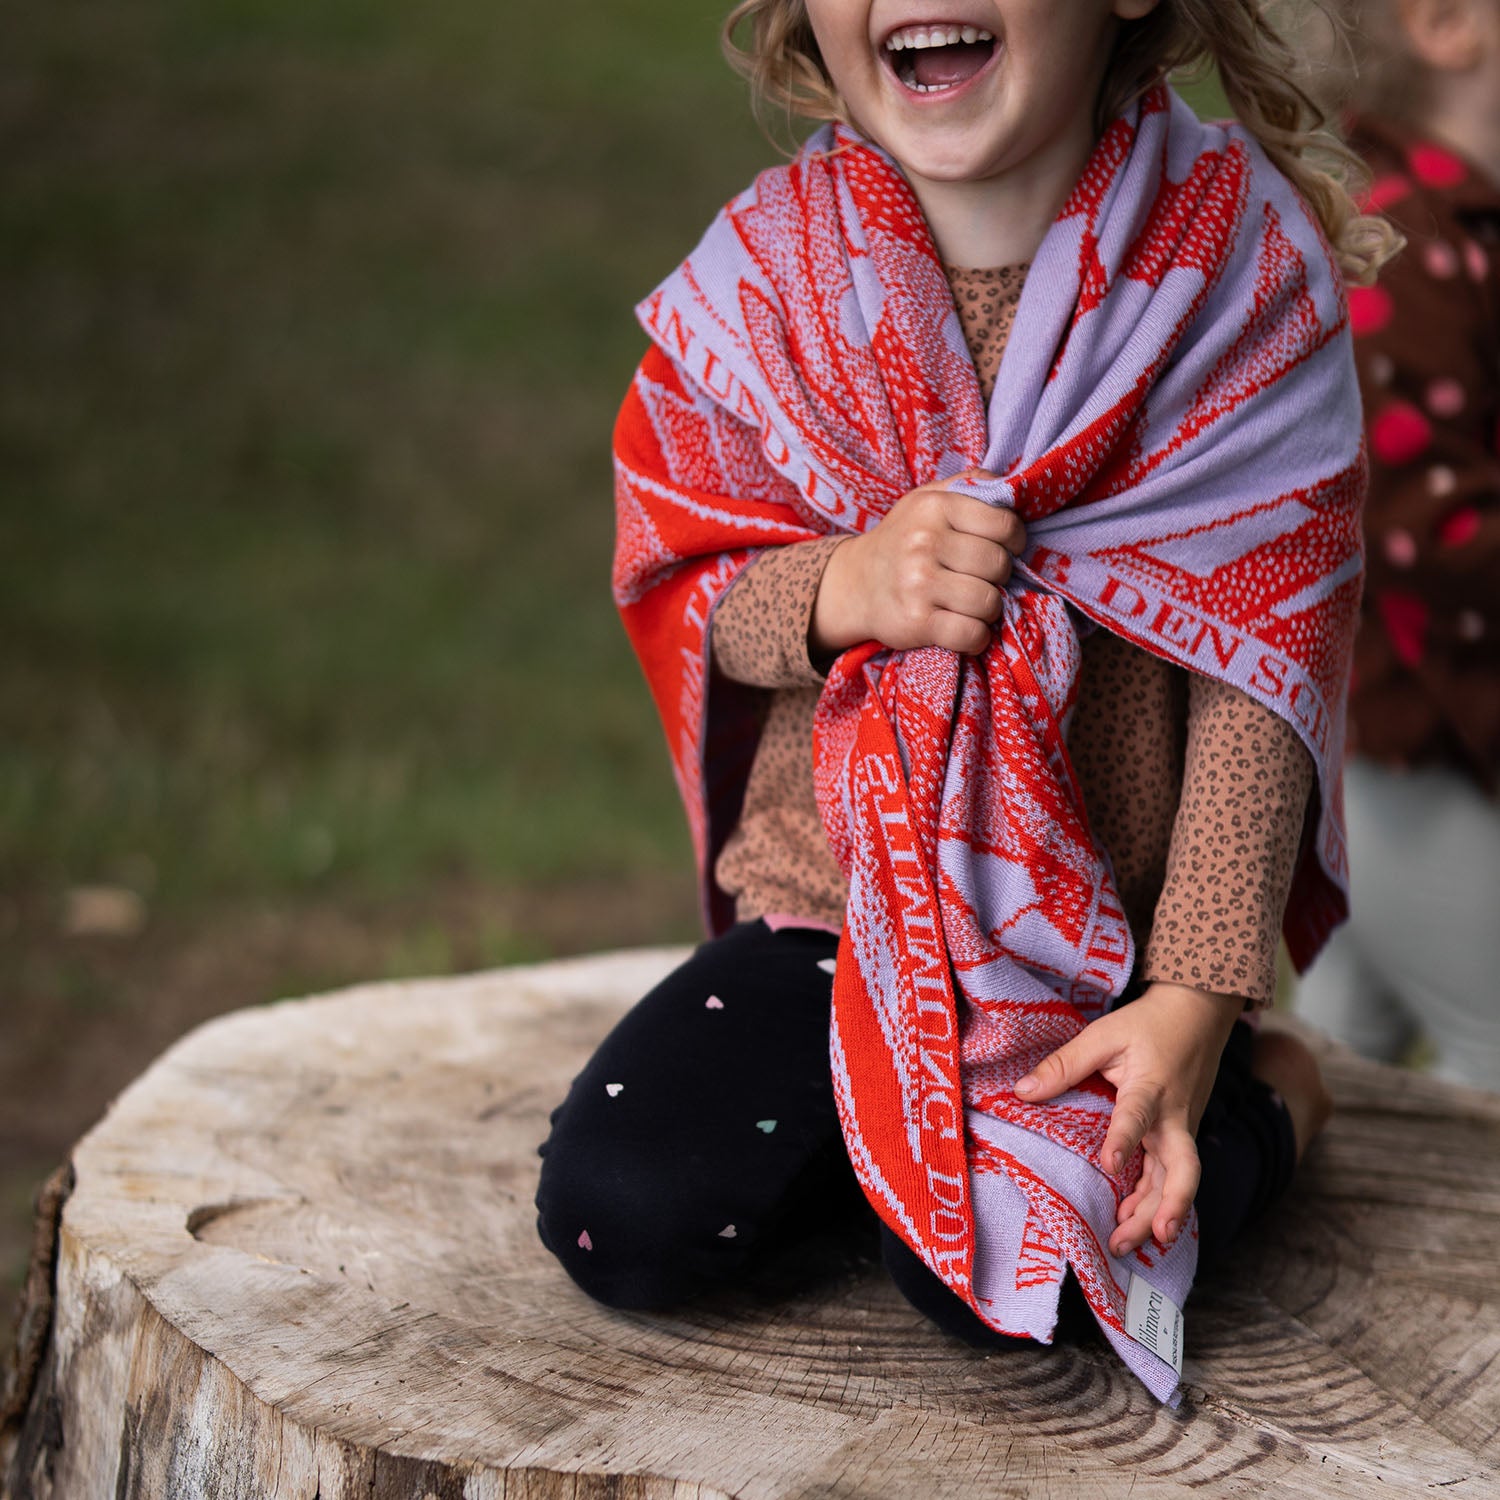 Personalisierte Babydecke Chamäleon aus Baumwolle mit Kaschmir in Flieder und Rot by LILIMOON